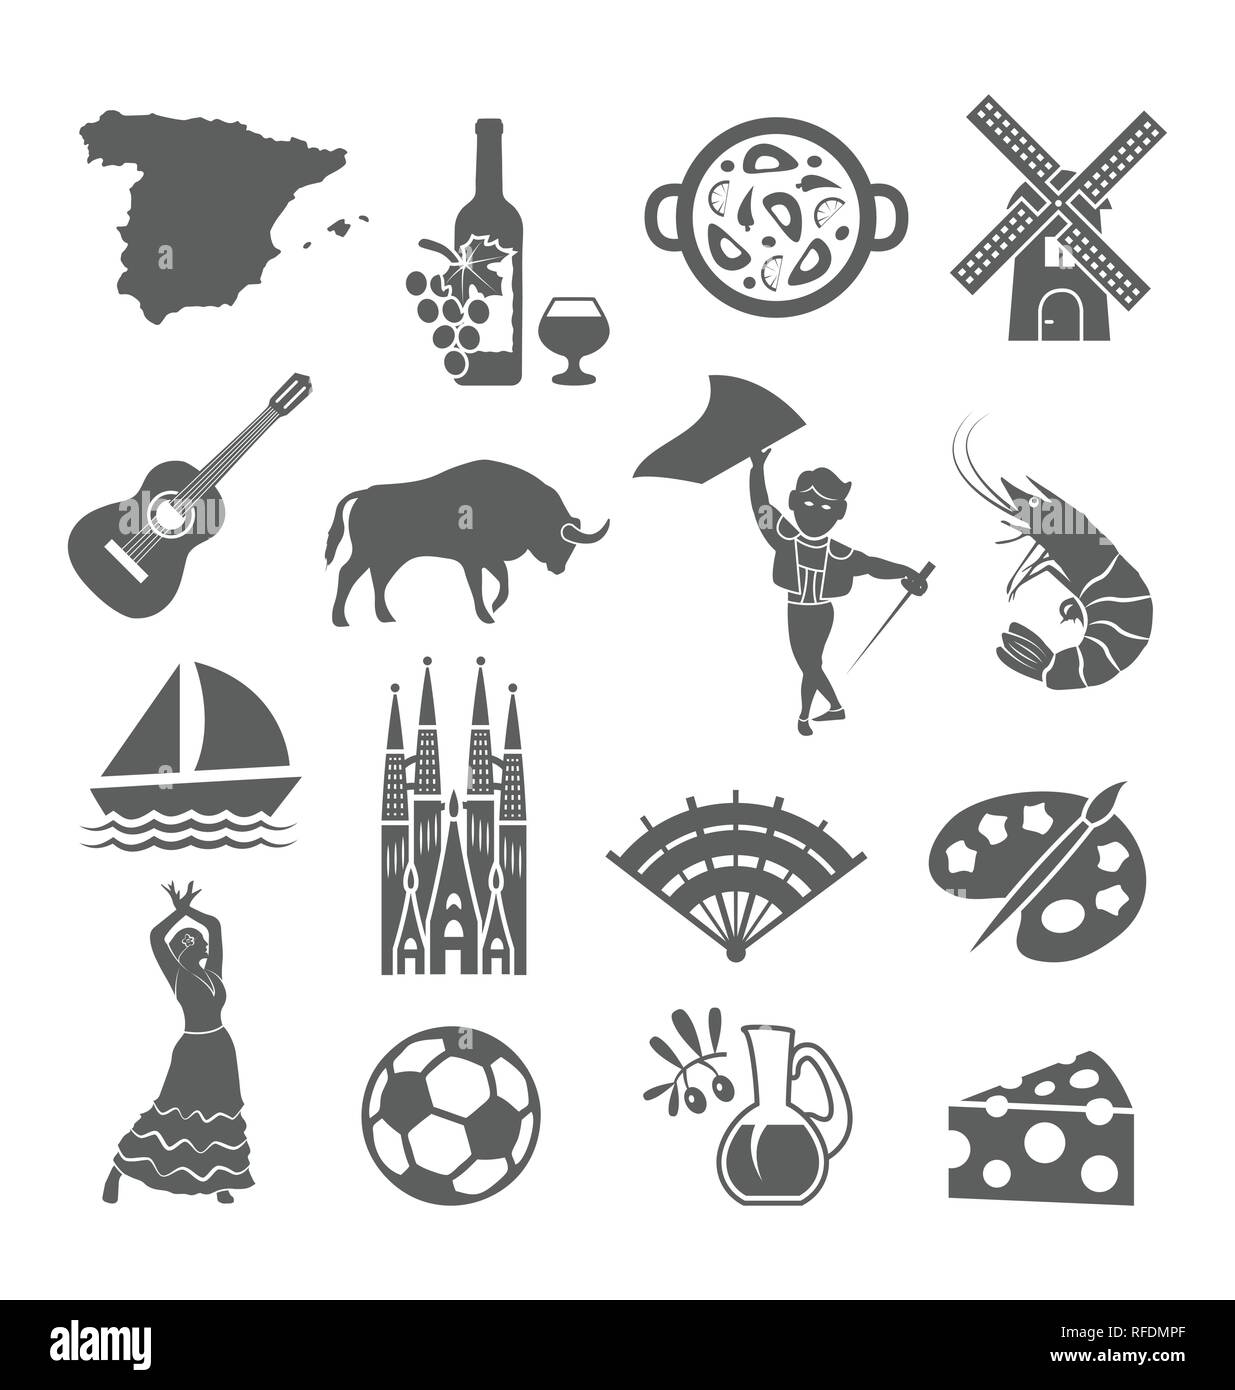 Espagne icons set. L'Espagnol symboles traditionnels et d'objets. Illustration de Vecteur